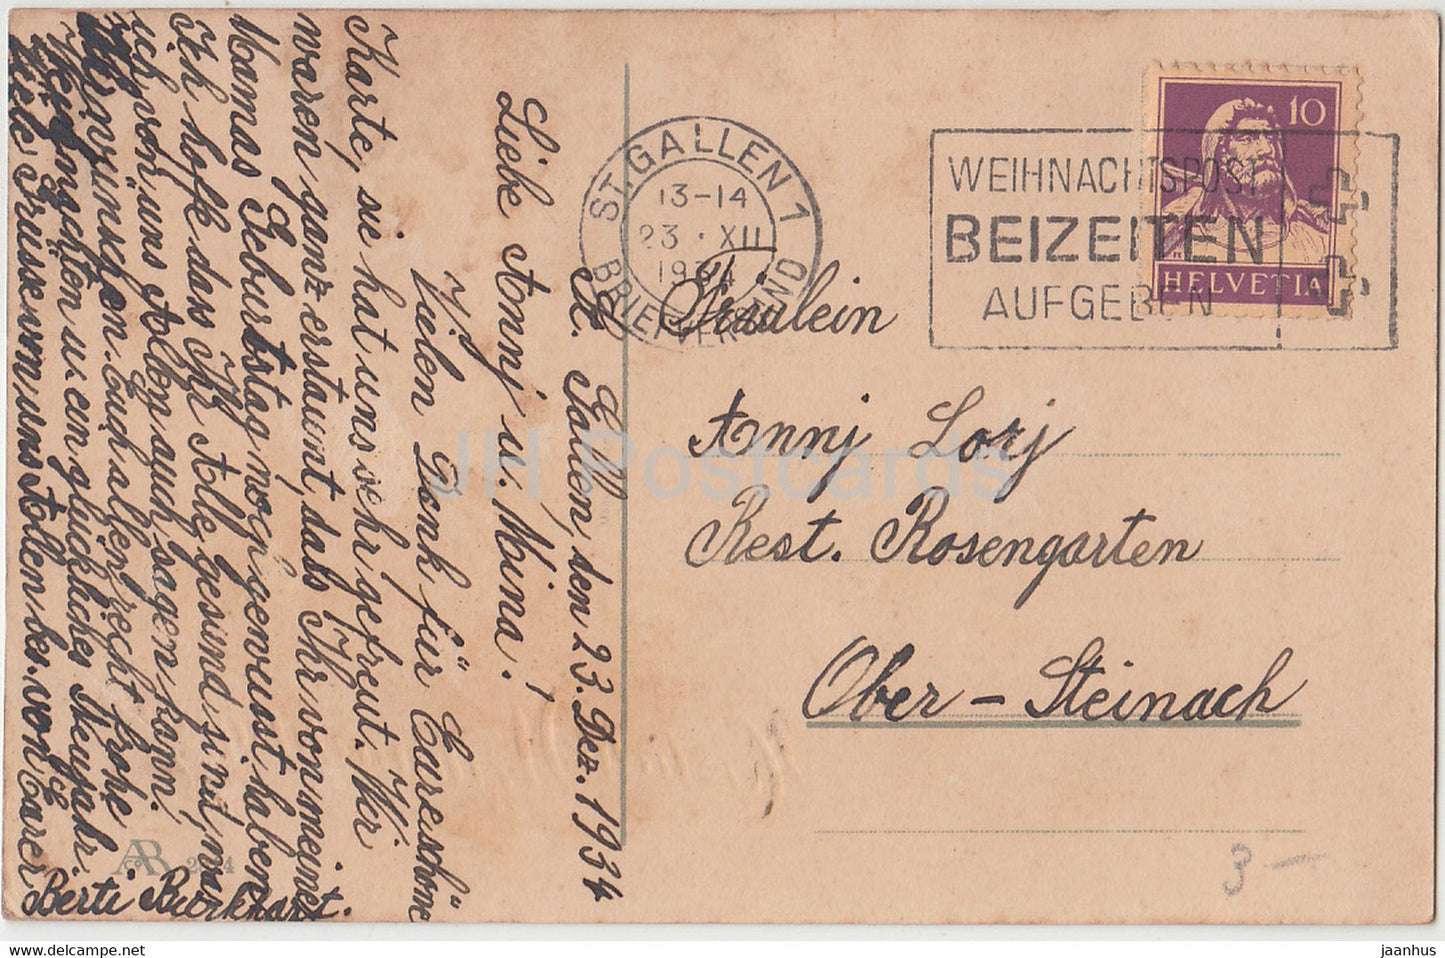 Weihnachtsgrußkarte - Herzliche Weihnachtsgrusse - Winter - Haus - AR 2814 - alte Postkarte - 1934 - Deutschland - gebraucht